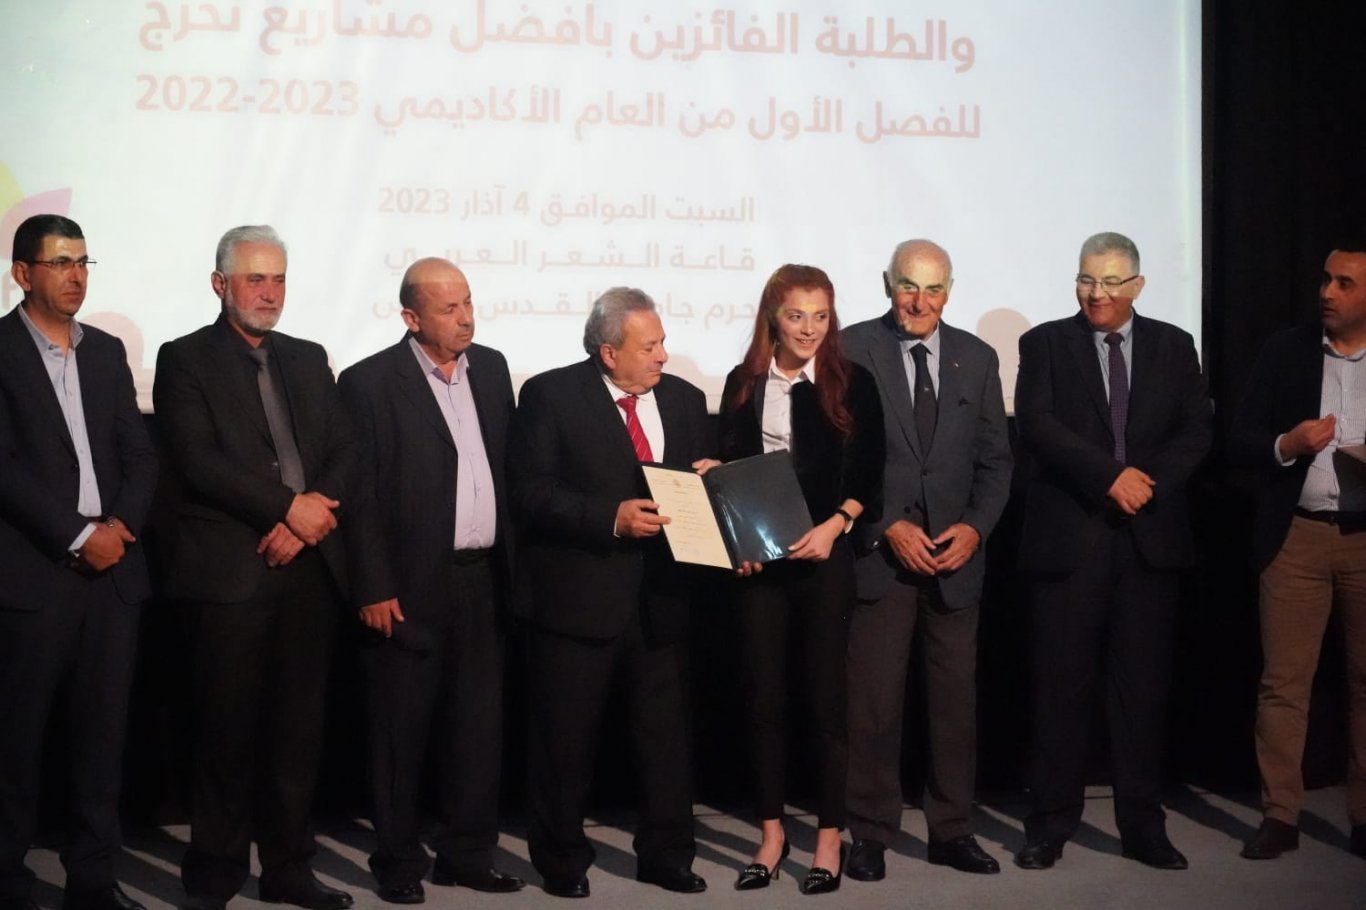 كلية الحقوق في جامعة القدس تكرم طلبتها المتفوقين والفائزين في مسابقة مشاريع التخرج للفصل الأول